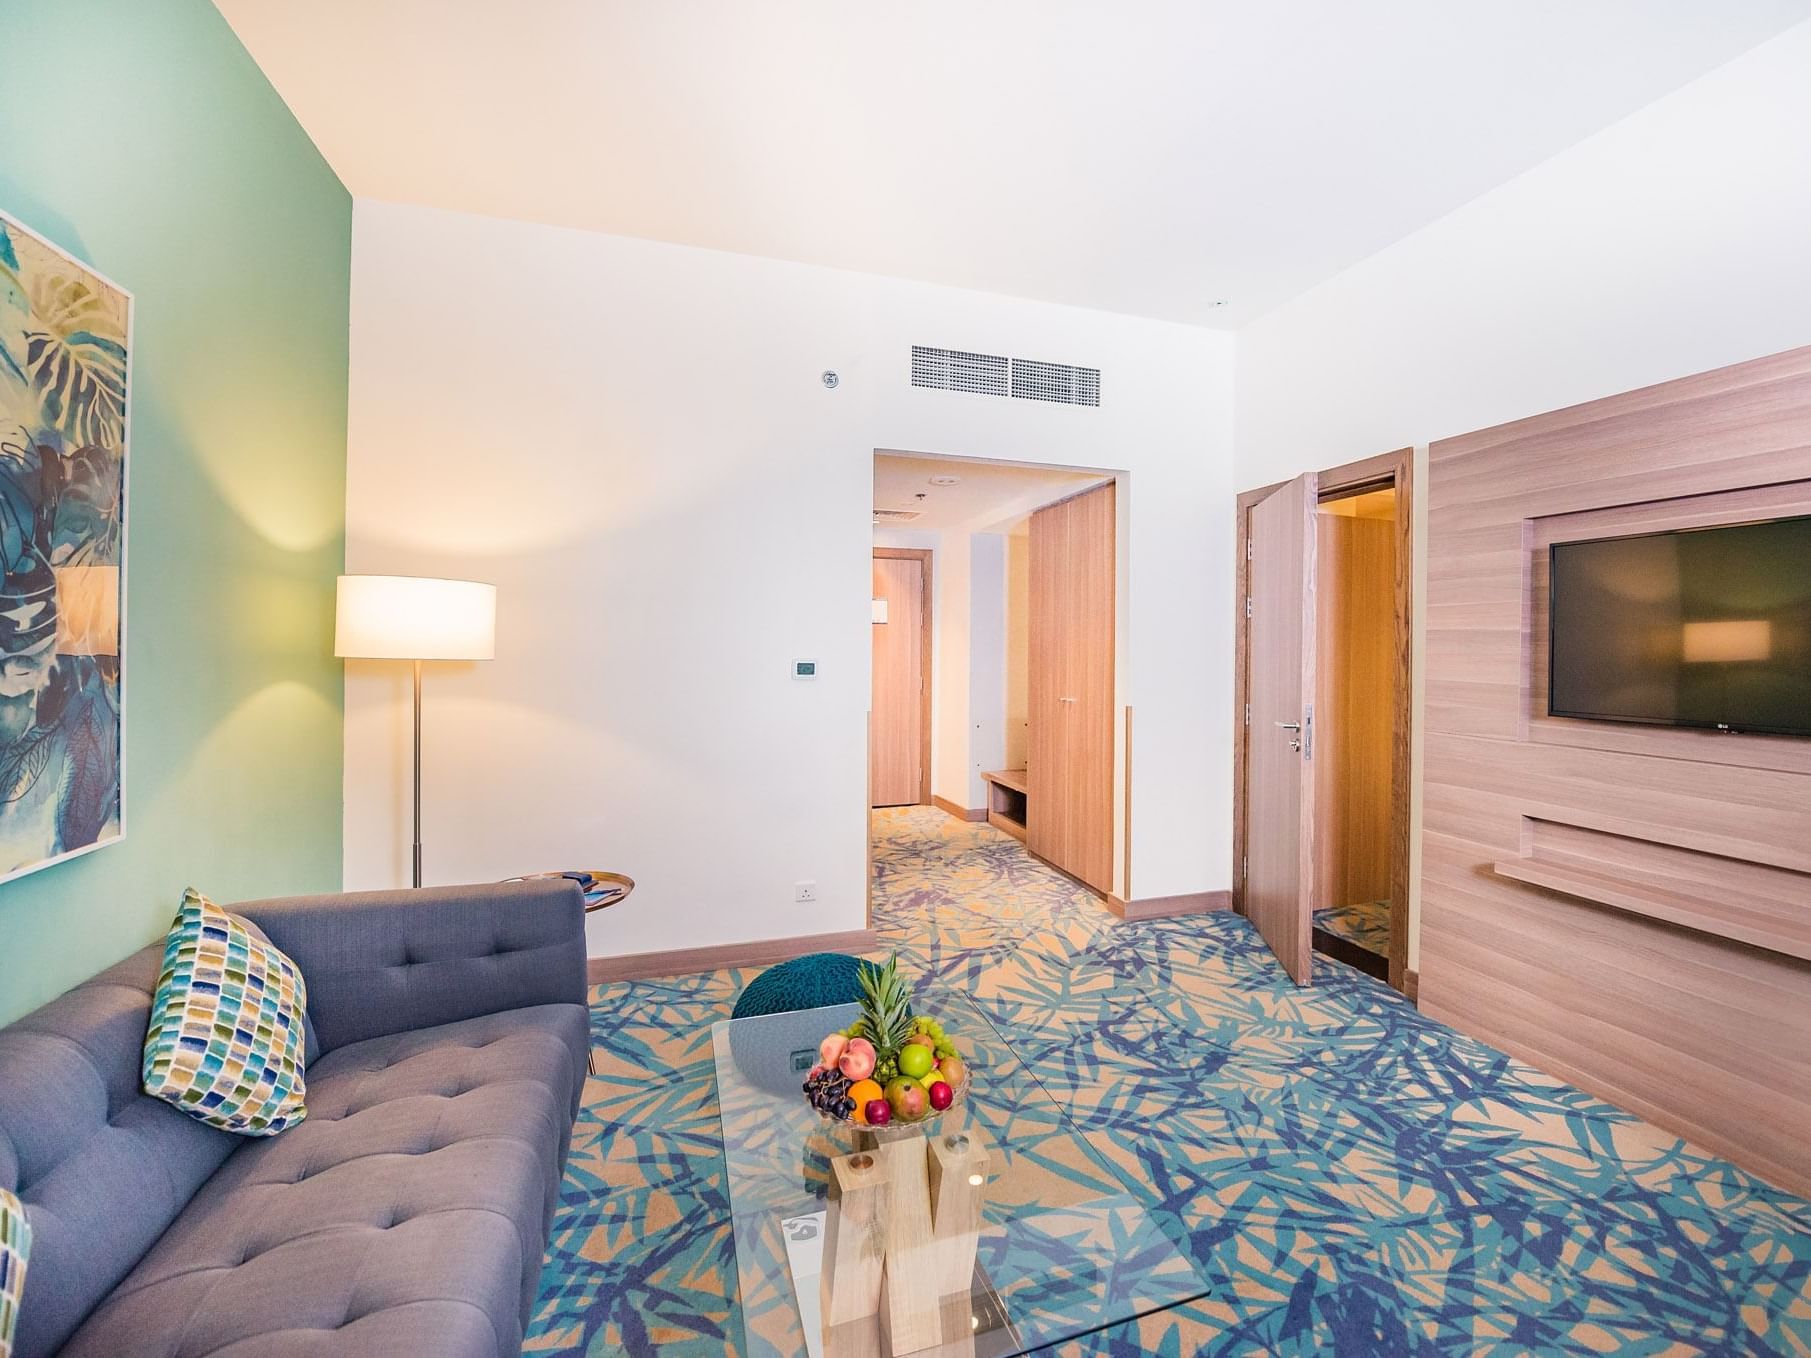 TV & Living area of junior suite at Mena Plaza Hotel